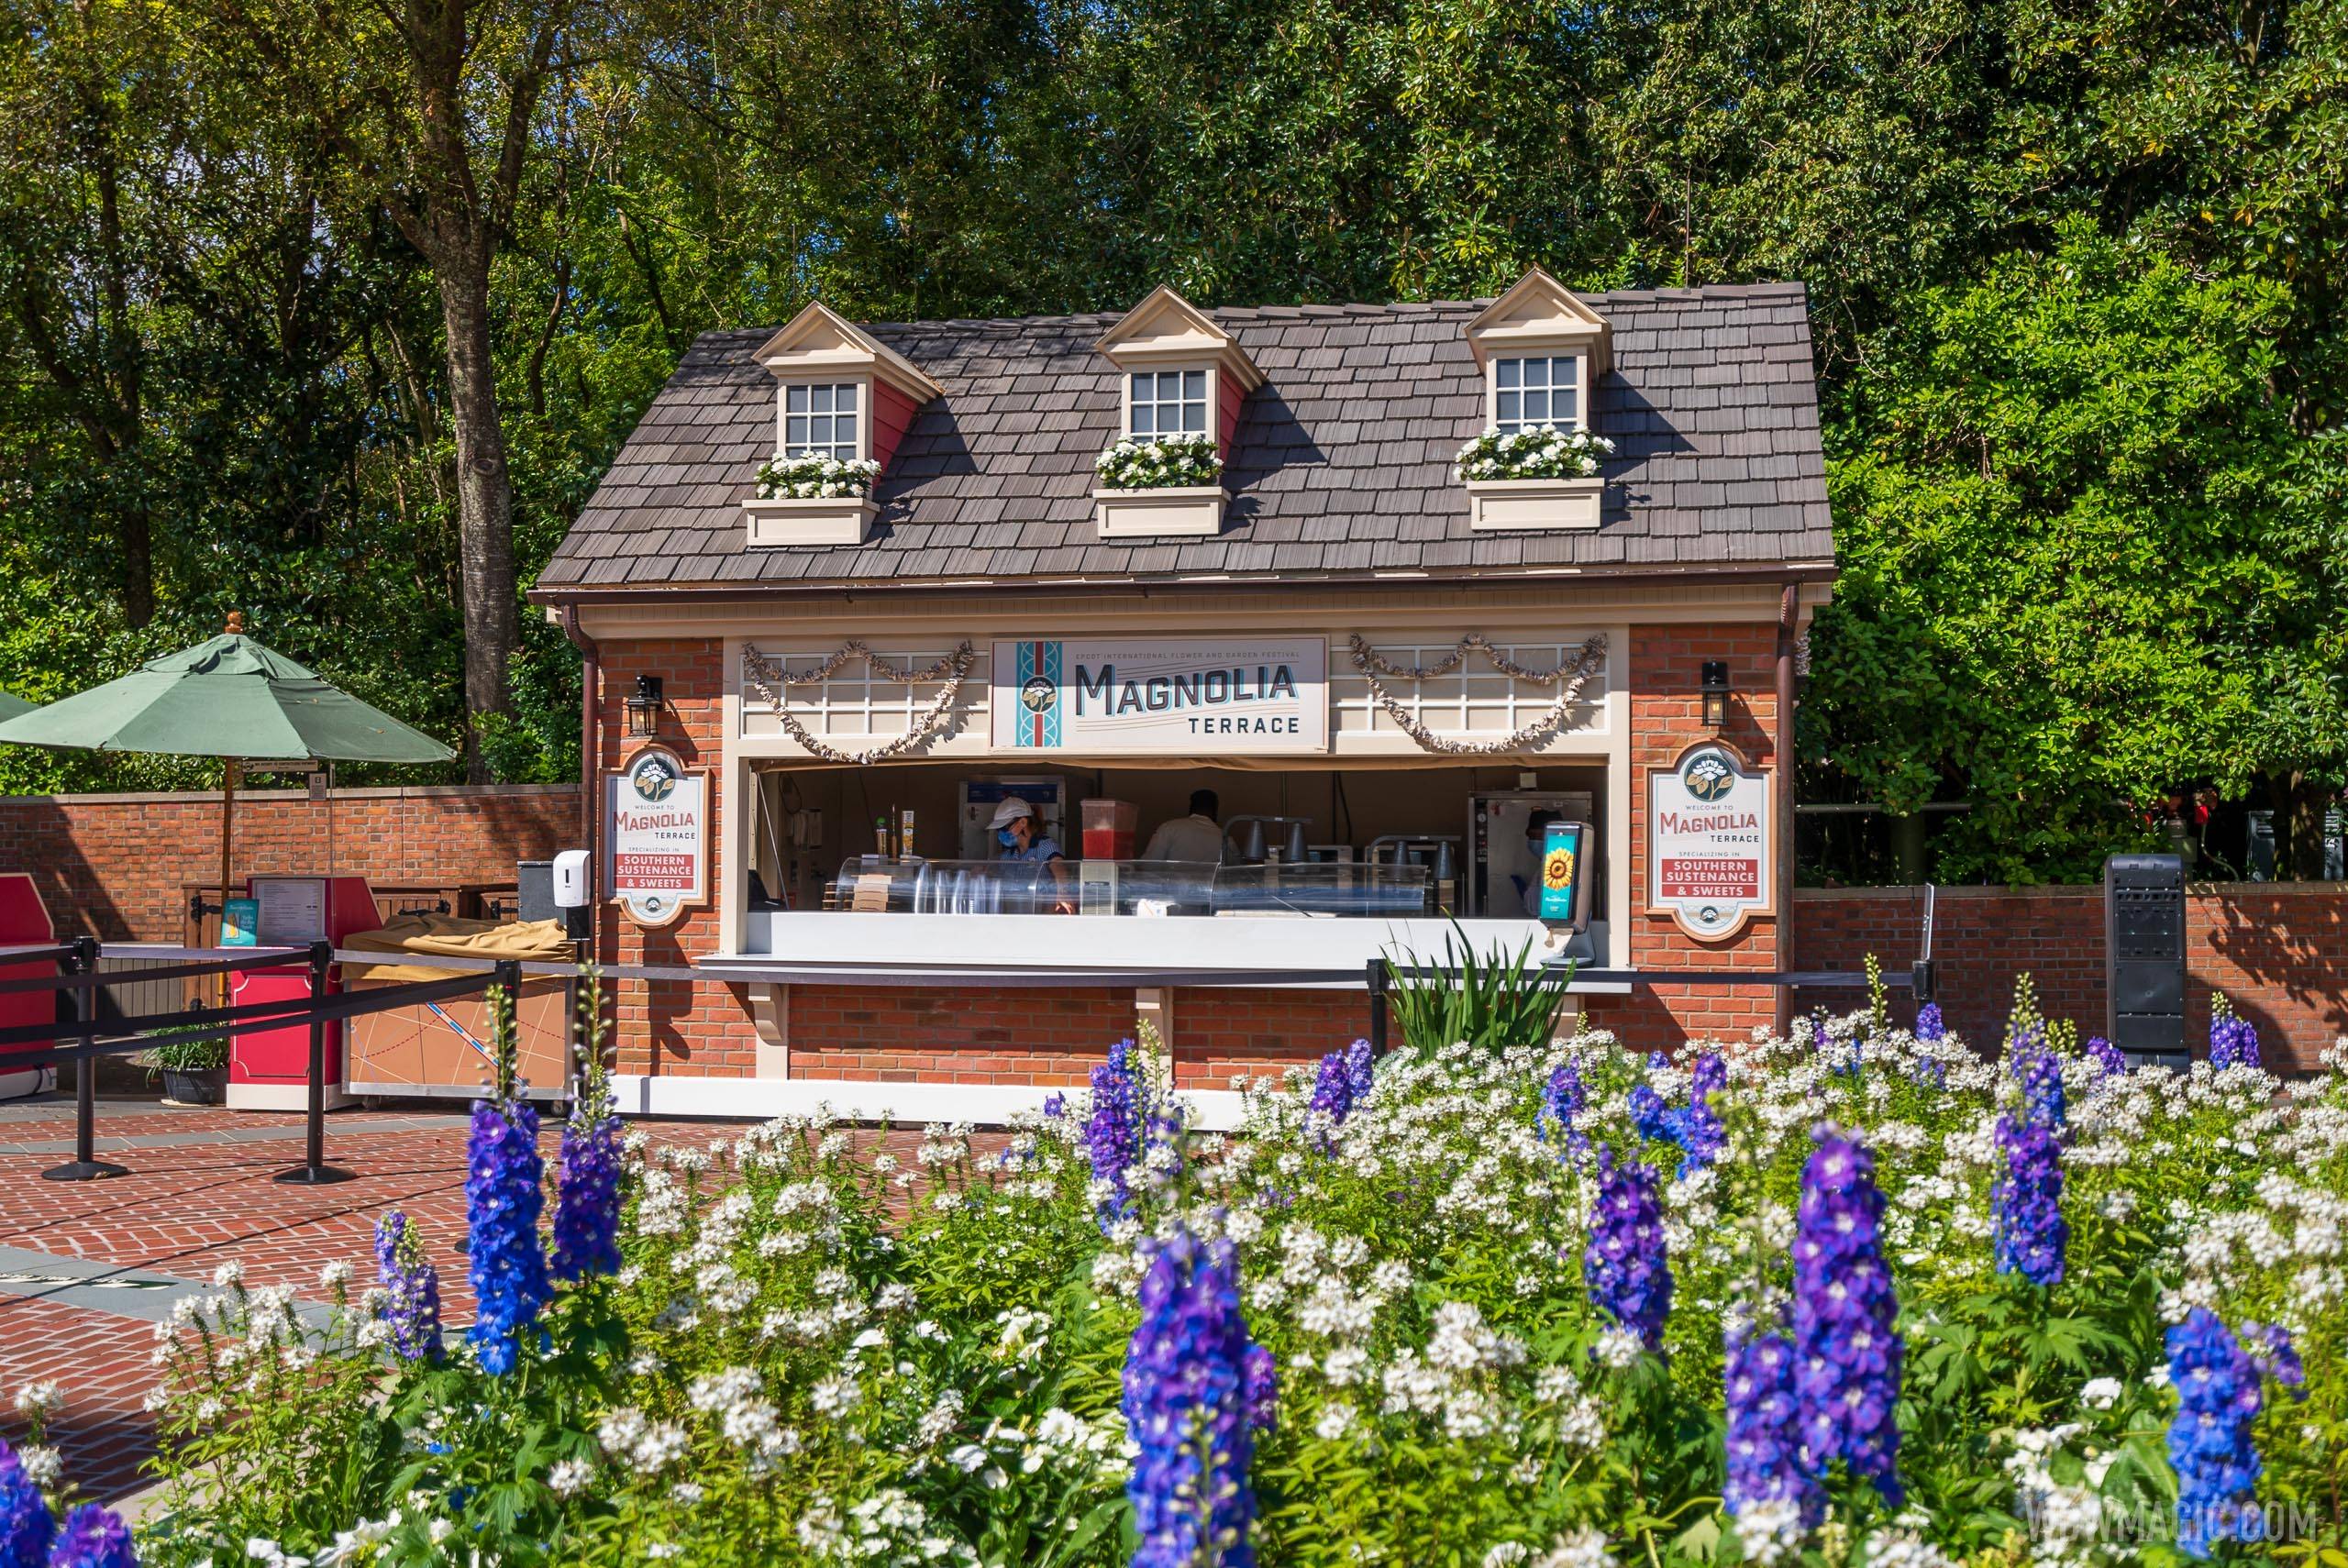 Magnolia Terrace kiosk at the 2021 Flower and Garden Festival